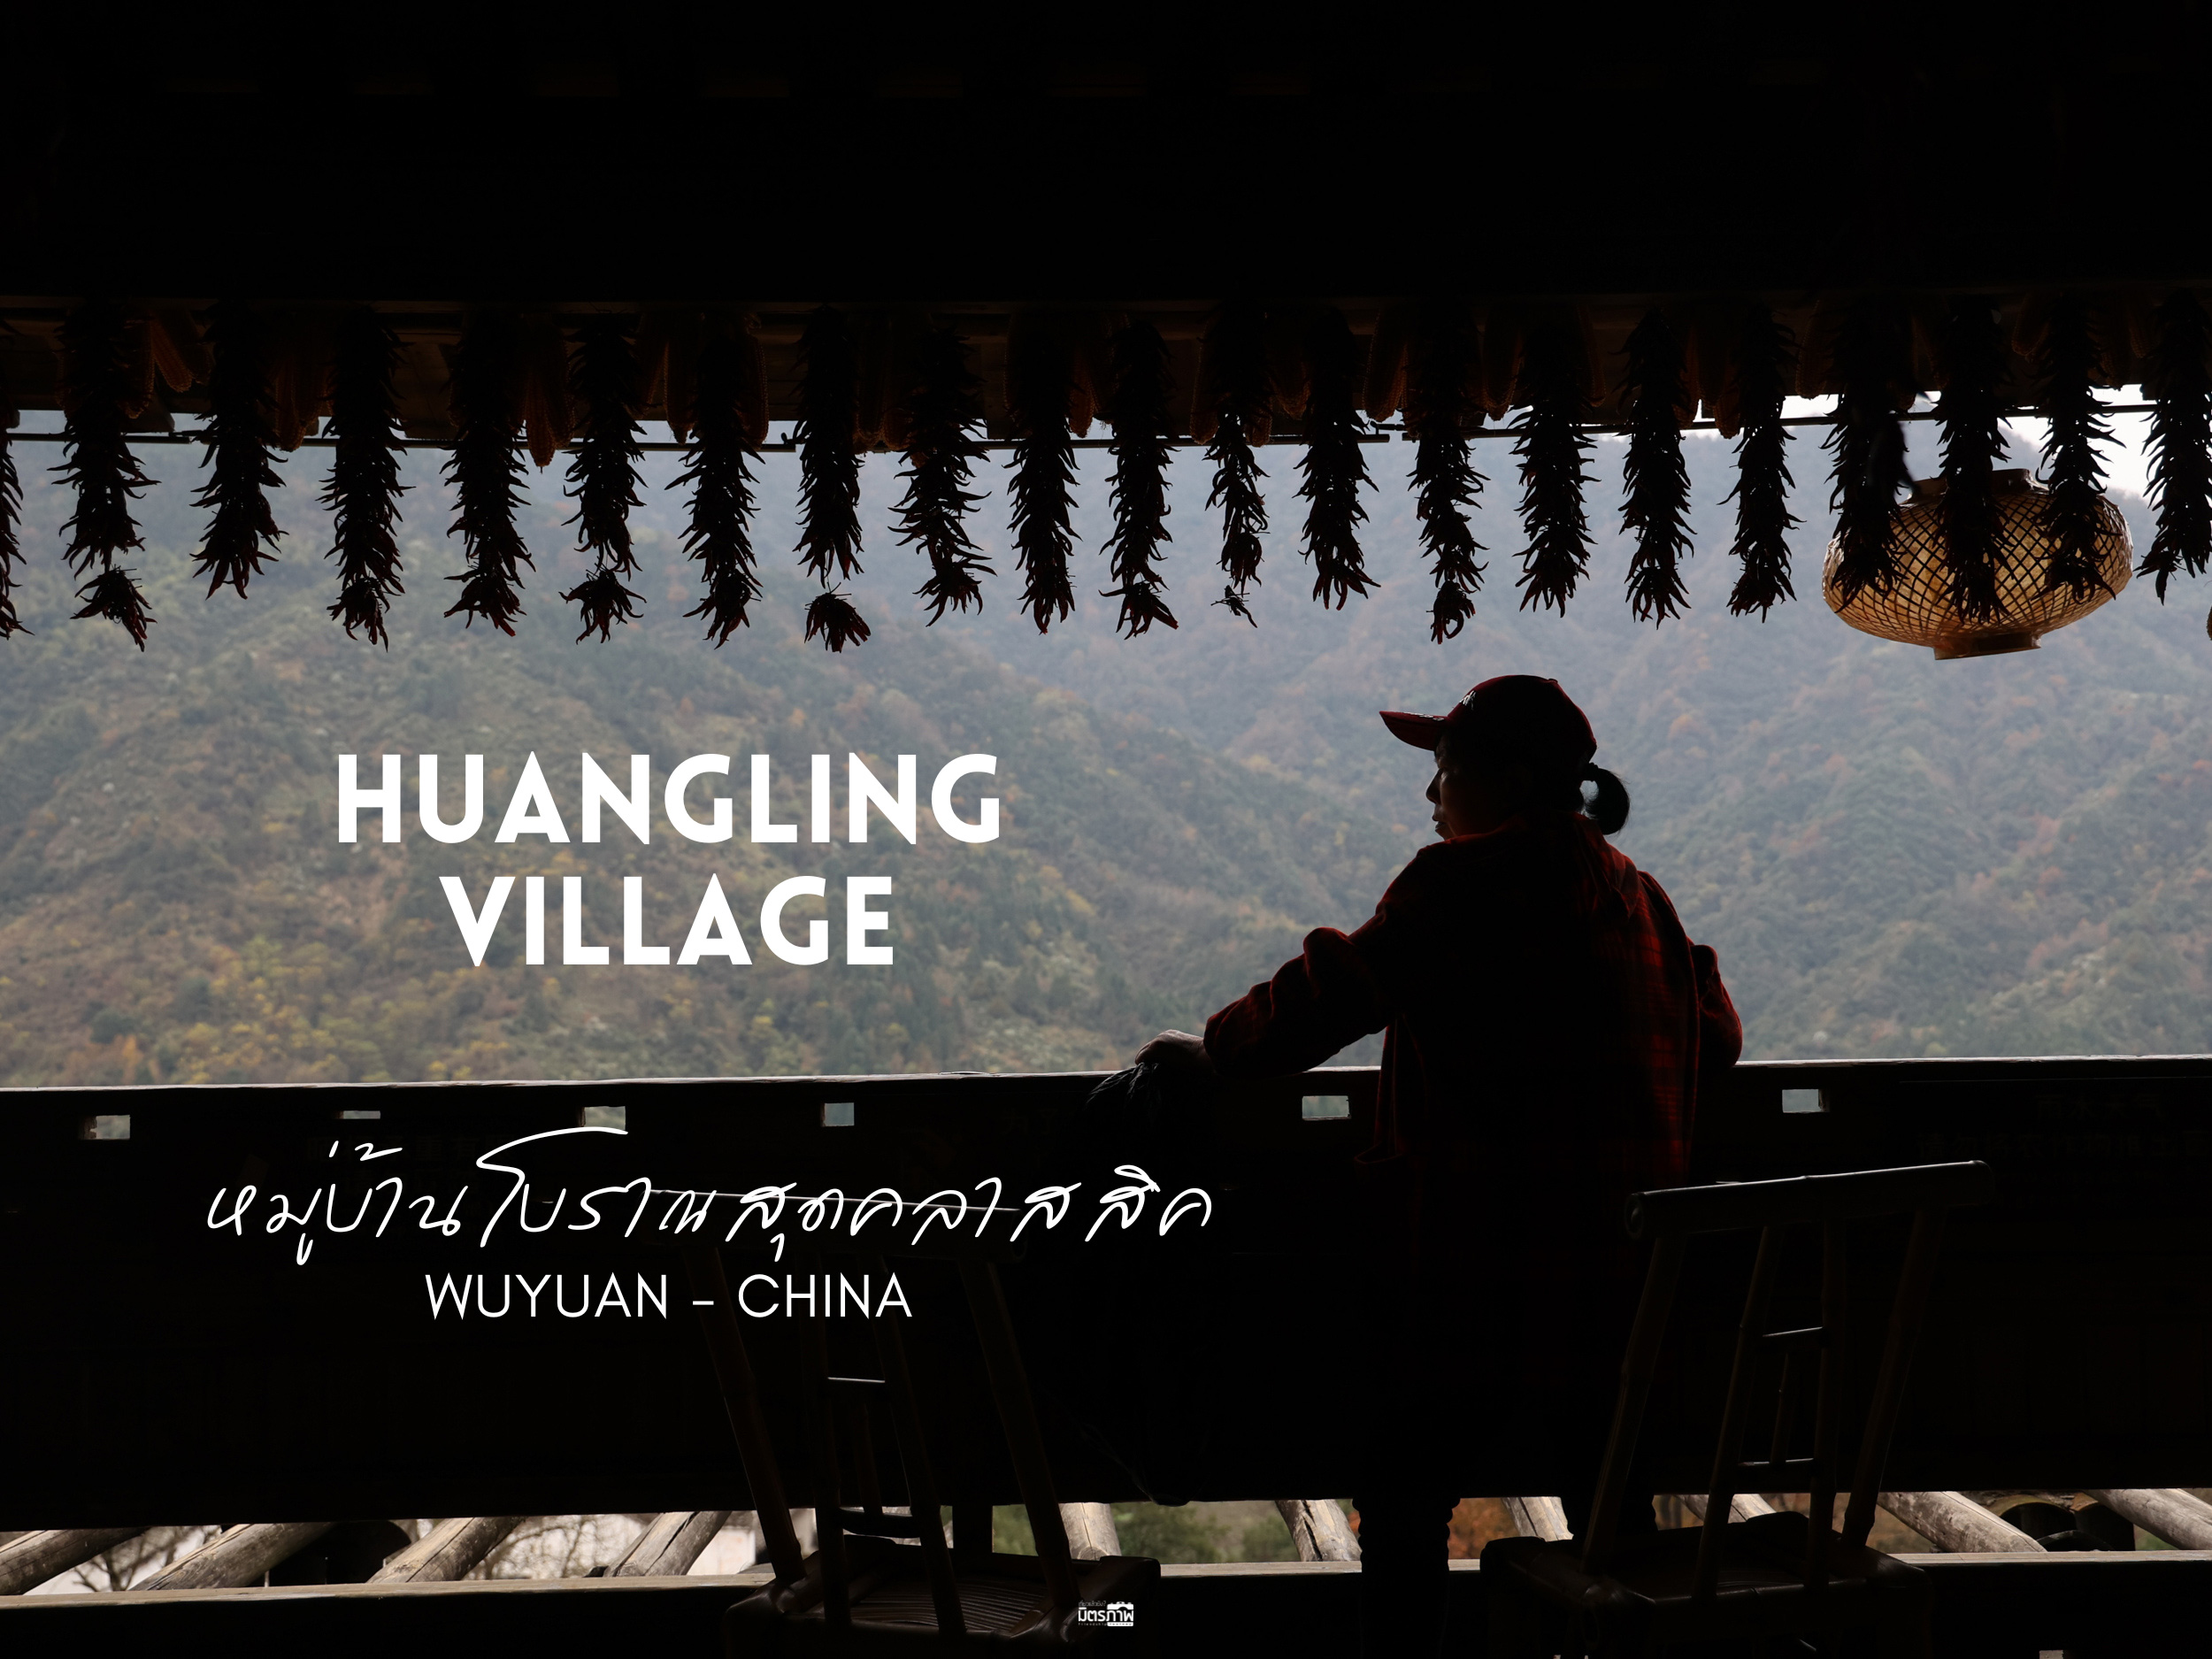 Huangling หวงหลิ่ง หมู่บ้านโบราณสุดคลาสสิค ลานตากแห้งใต้ท้องฟ้า ที่ Wuyuan จีน